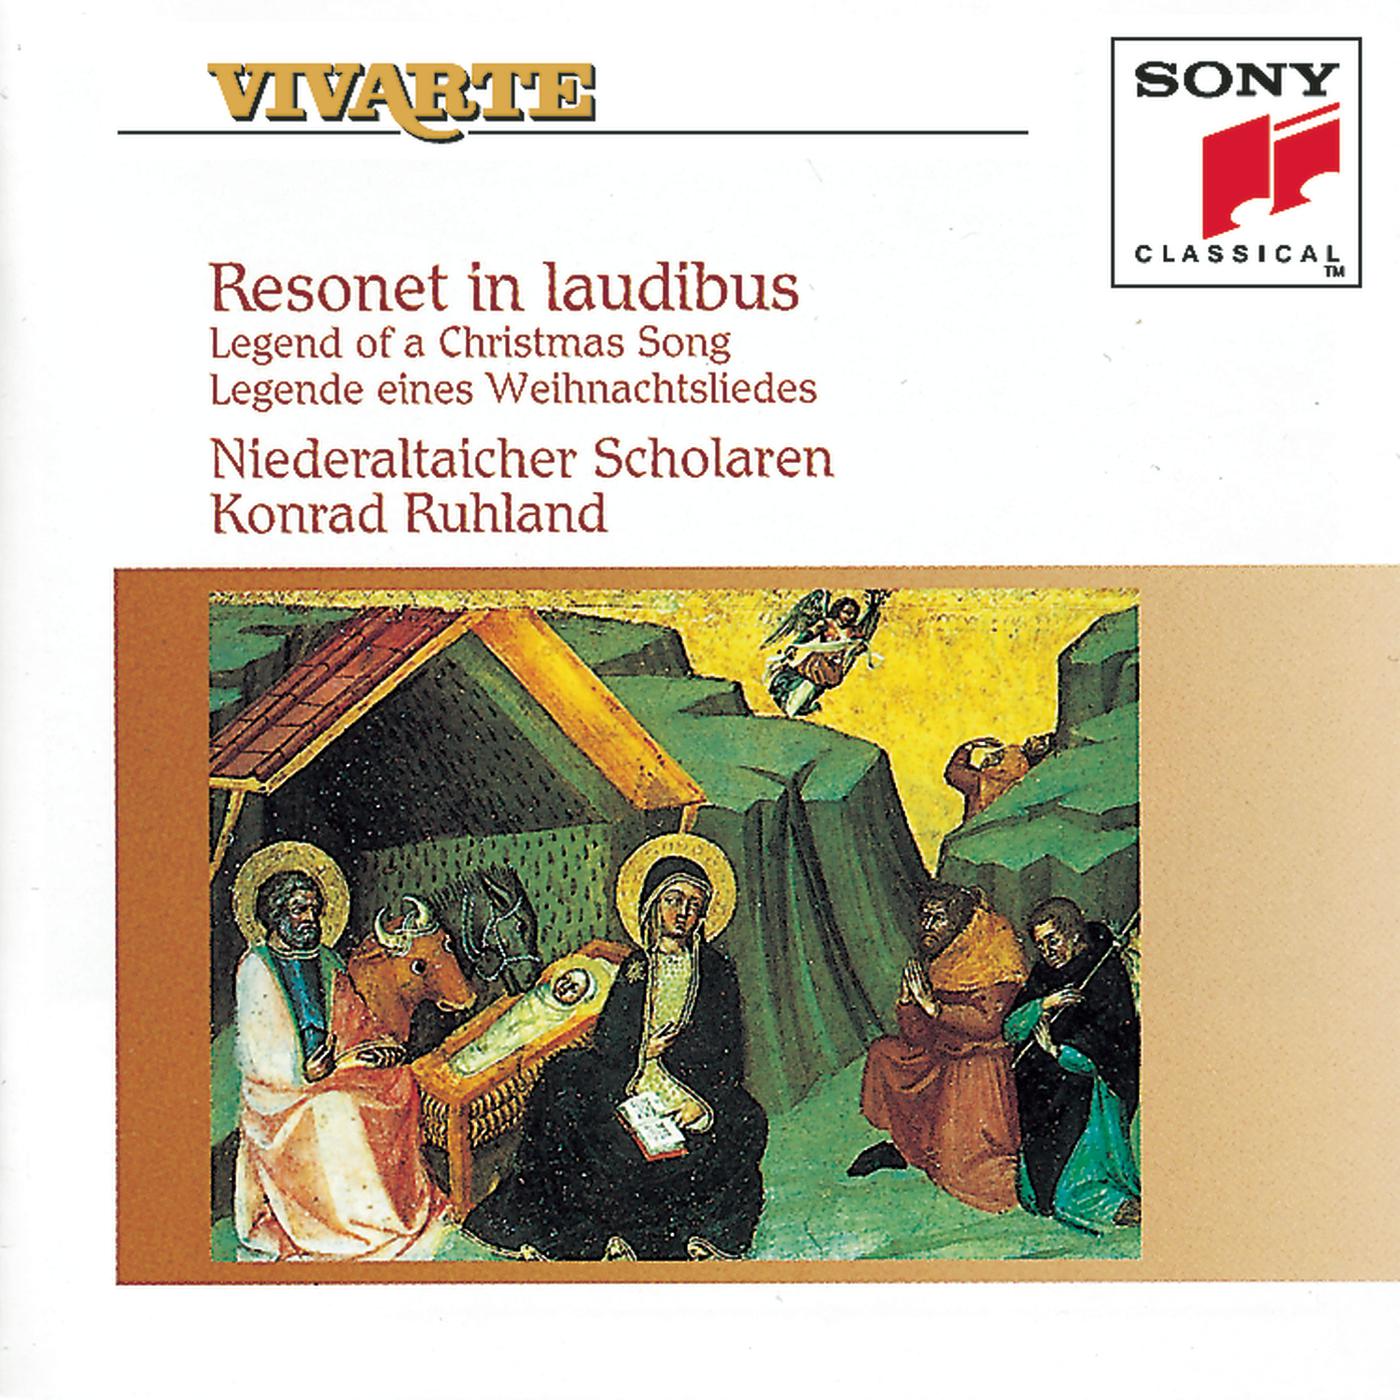 Resonet in laudibus:Resonet in laudibus Three-choir motet for 10 voices